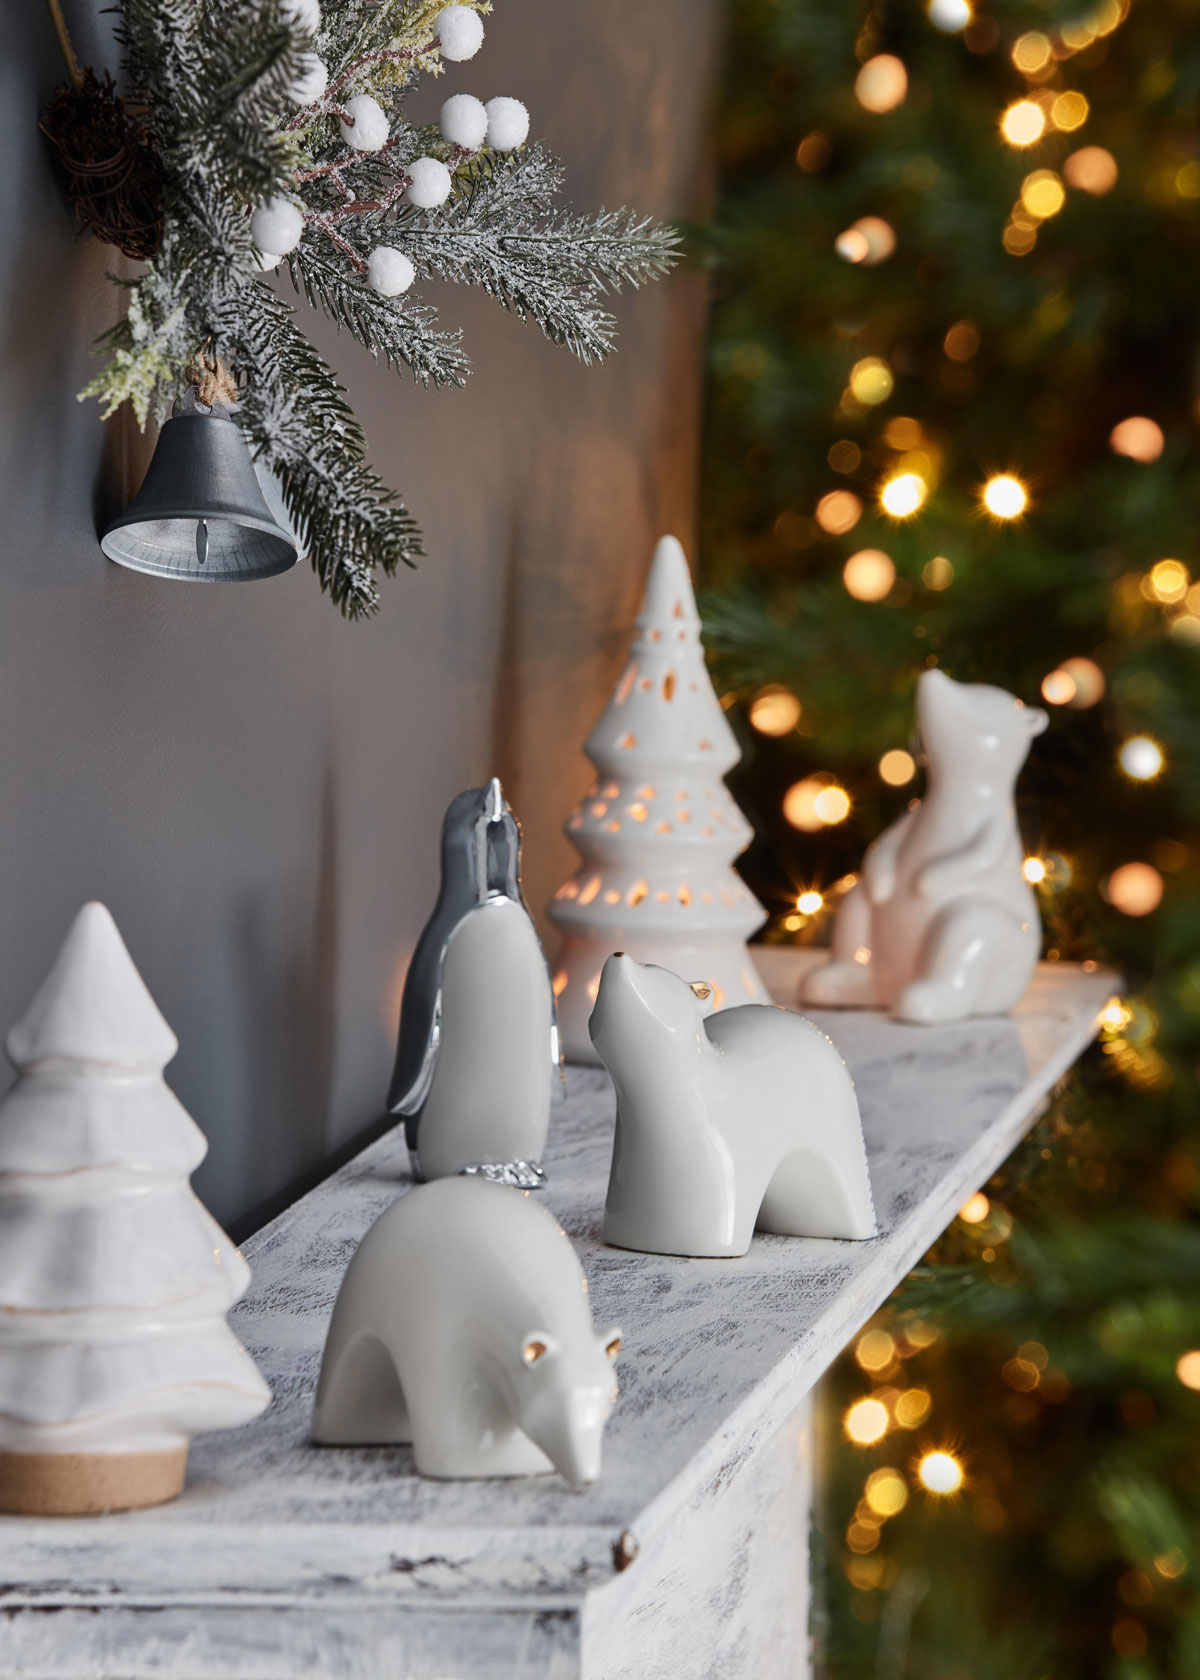 Polička so keramickými ozdobami stromčekov, ľadových medveďov a tučniaka